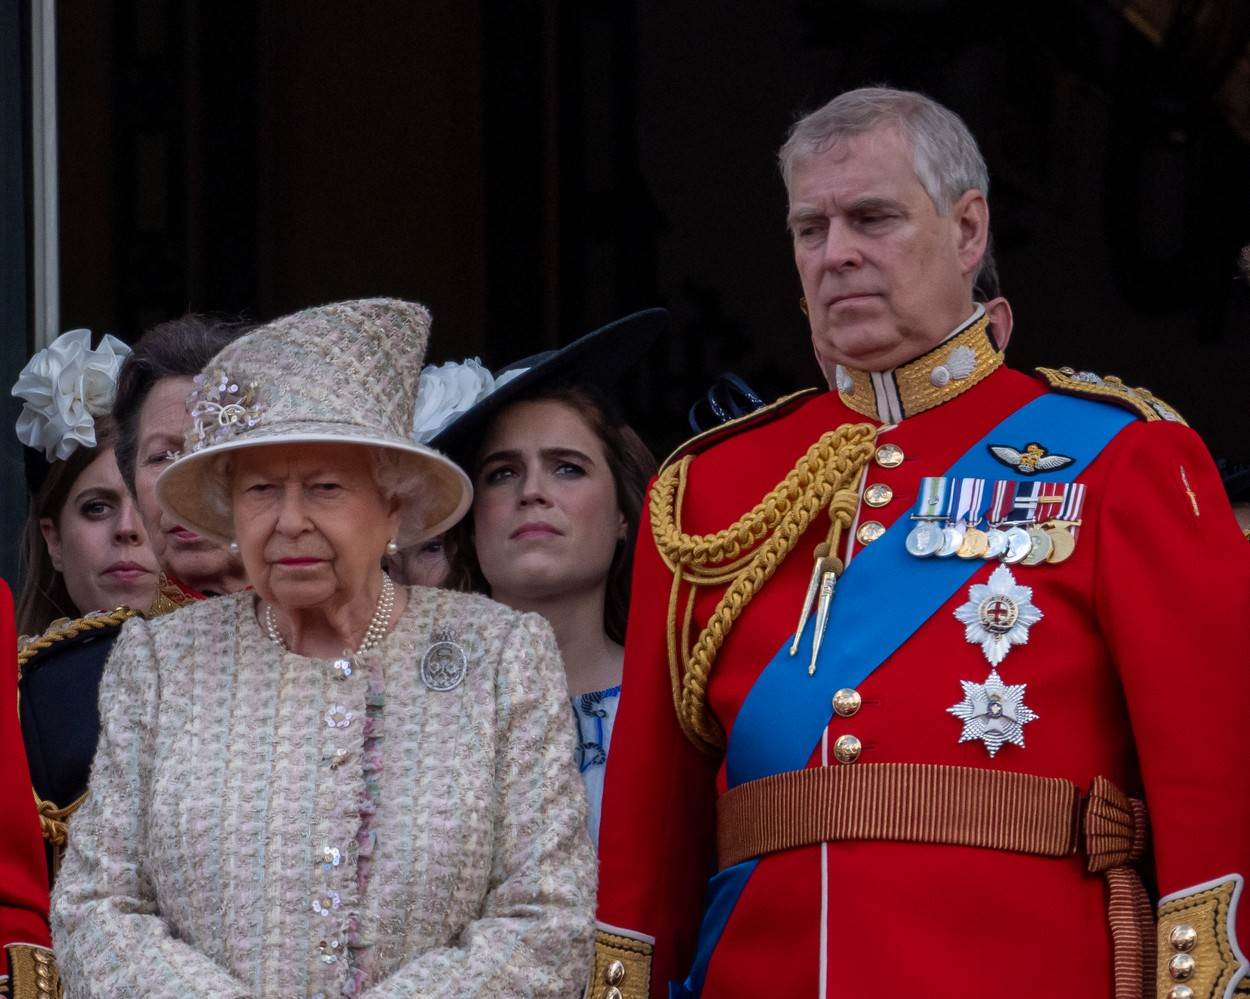  Kraljica će navodno razmotriti oduzimanje titula princuz Endruu, a on neće smeti da se pojavi na njenom jubileju. 